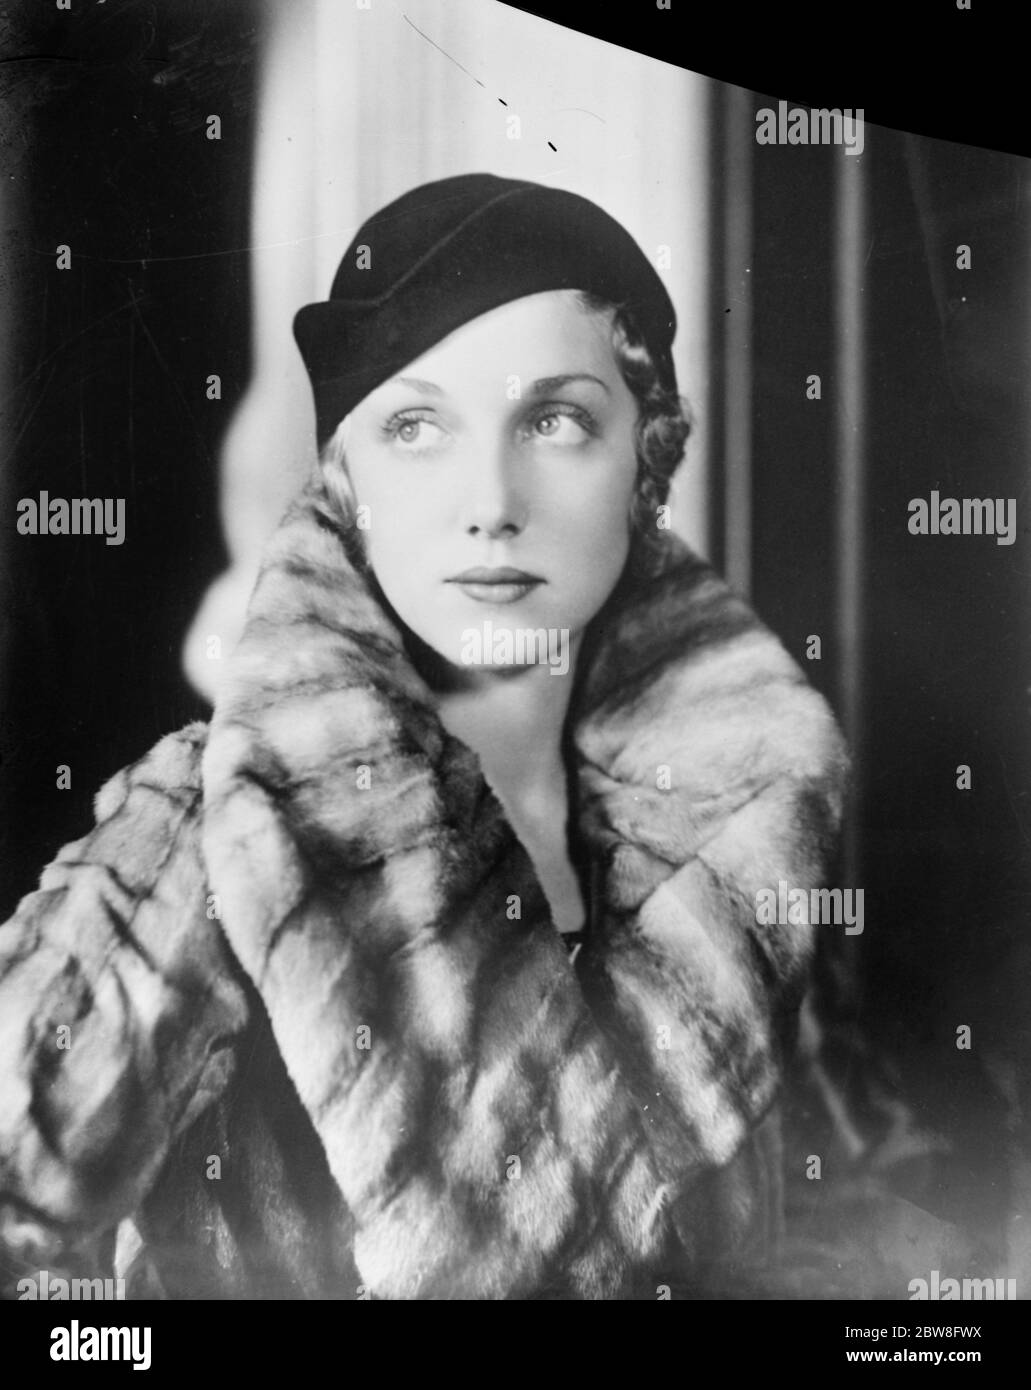 Ein Hut, der in dieser Saison sehr beliebt ist. Miss Leila Hyams, der Filmstar, zeigt eine dieser neuen Hutformen aus braunem Filz. Bis 14. August 1931 Stockfoto